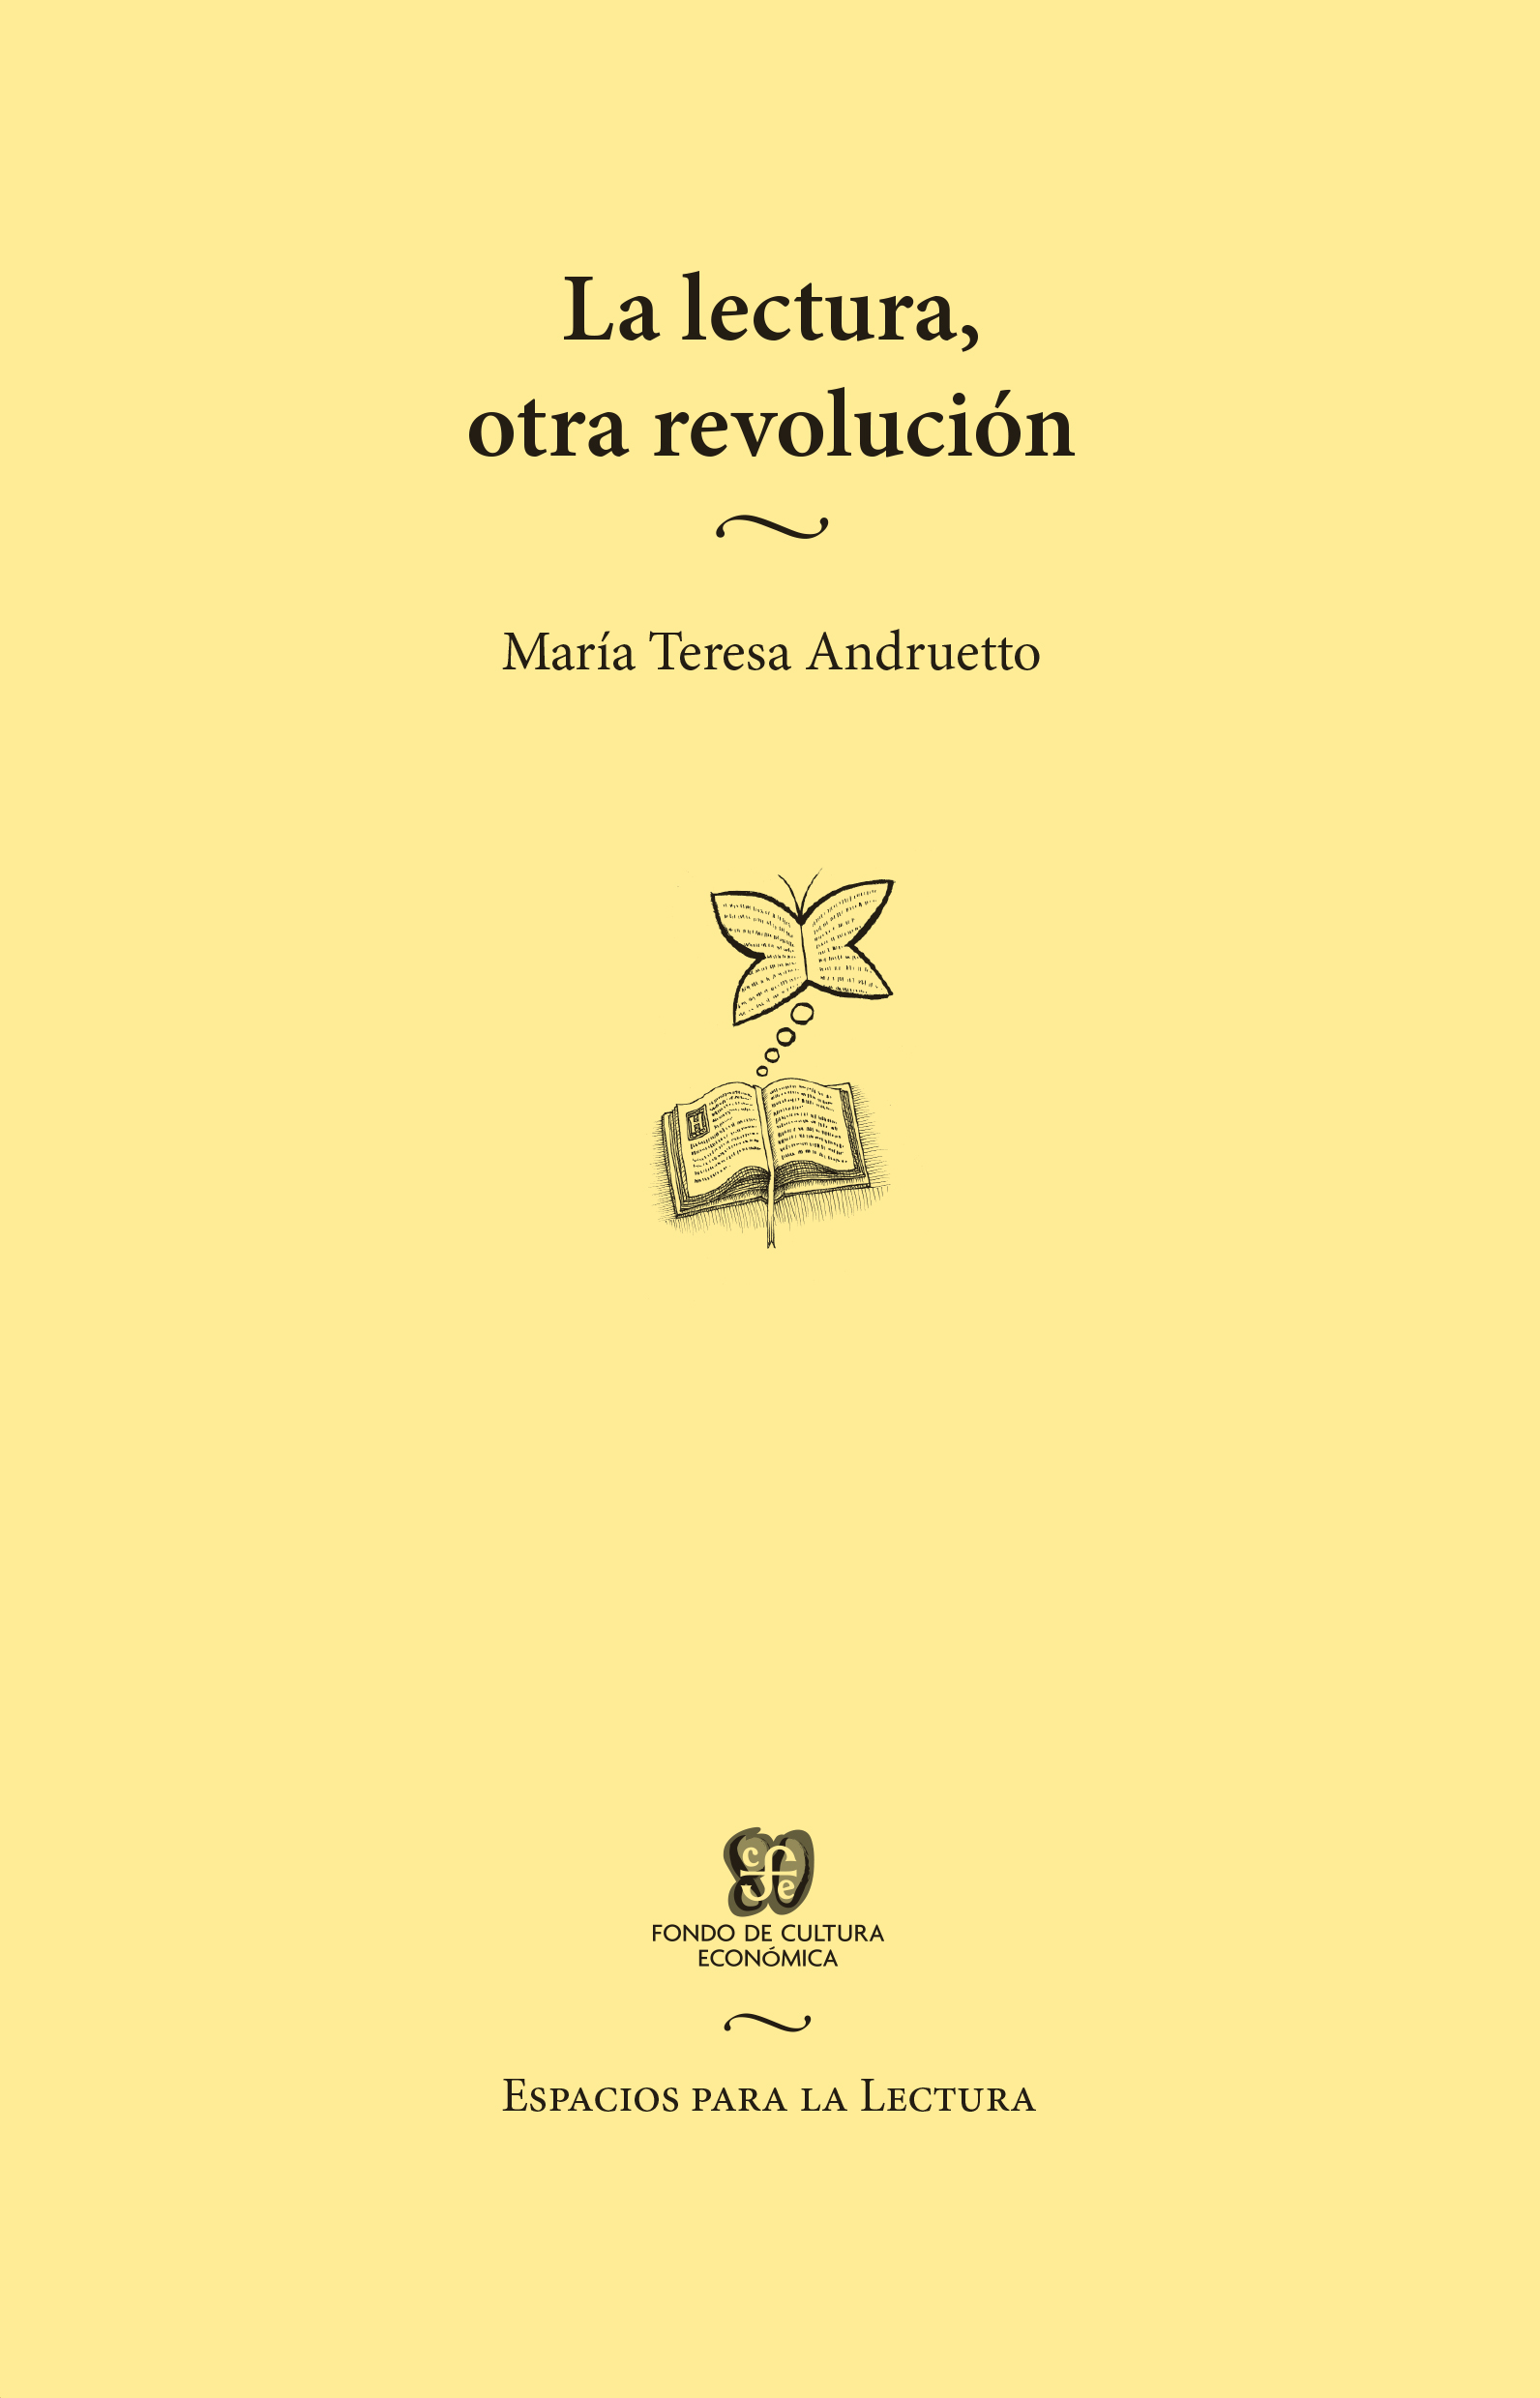 Reading, another revolution (La lectura, otra revolución)